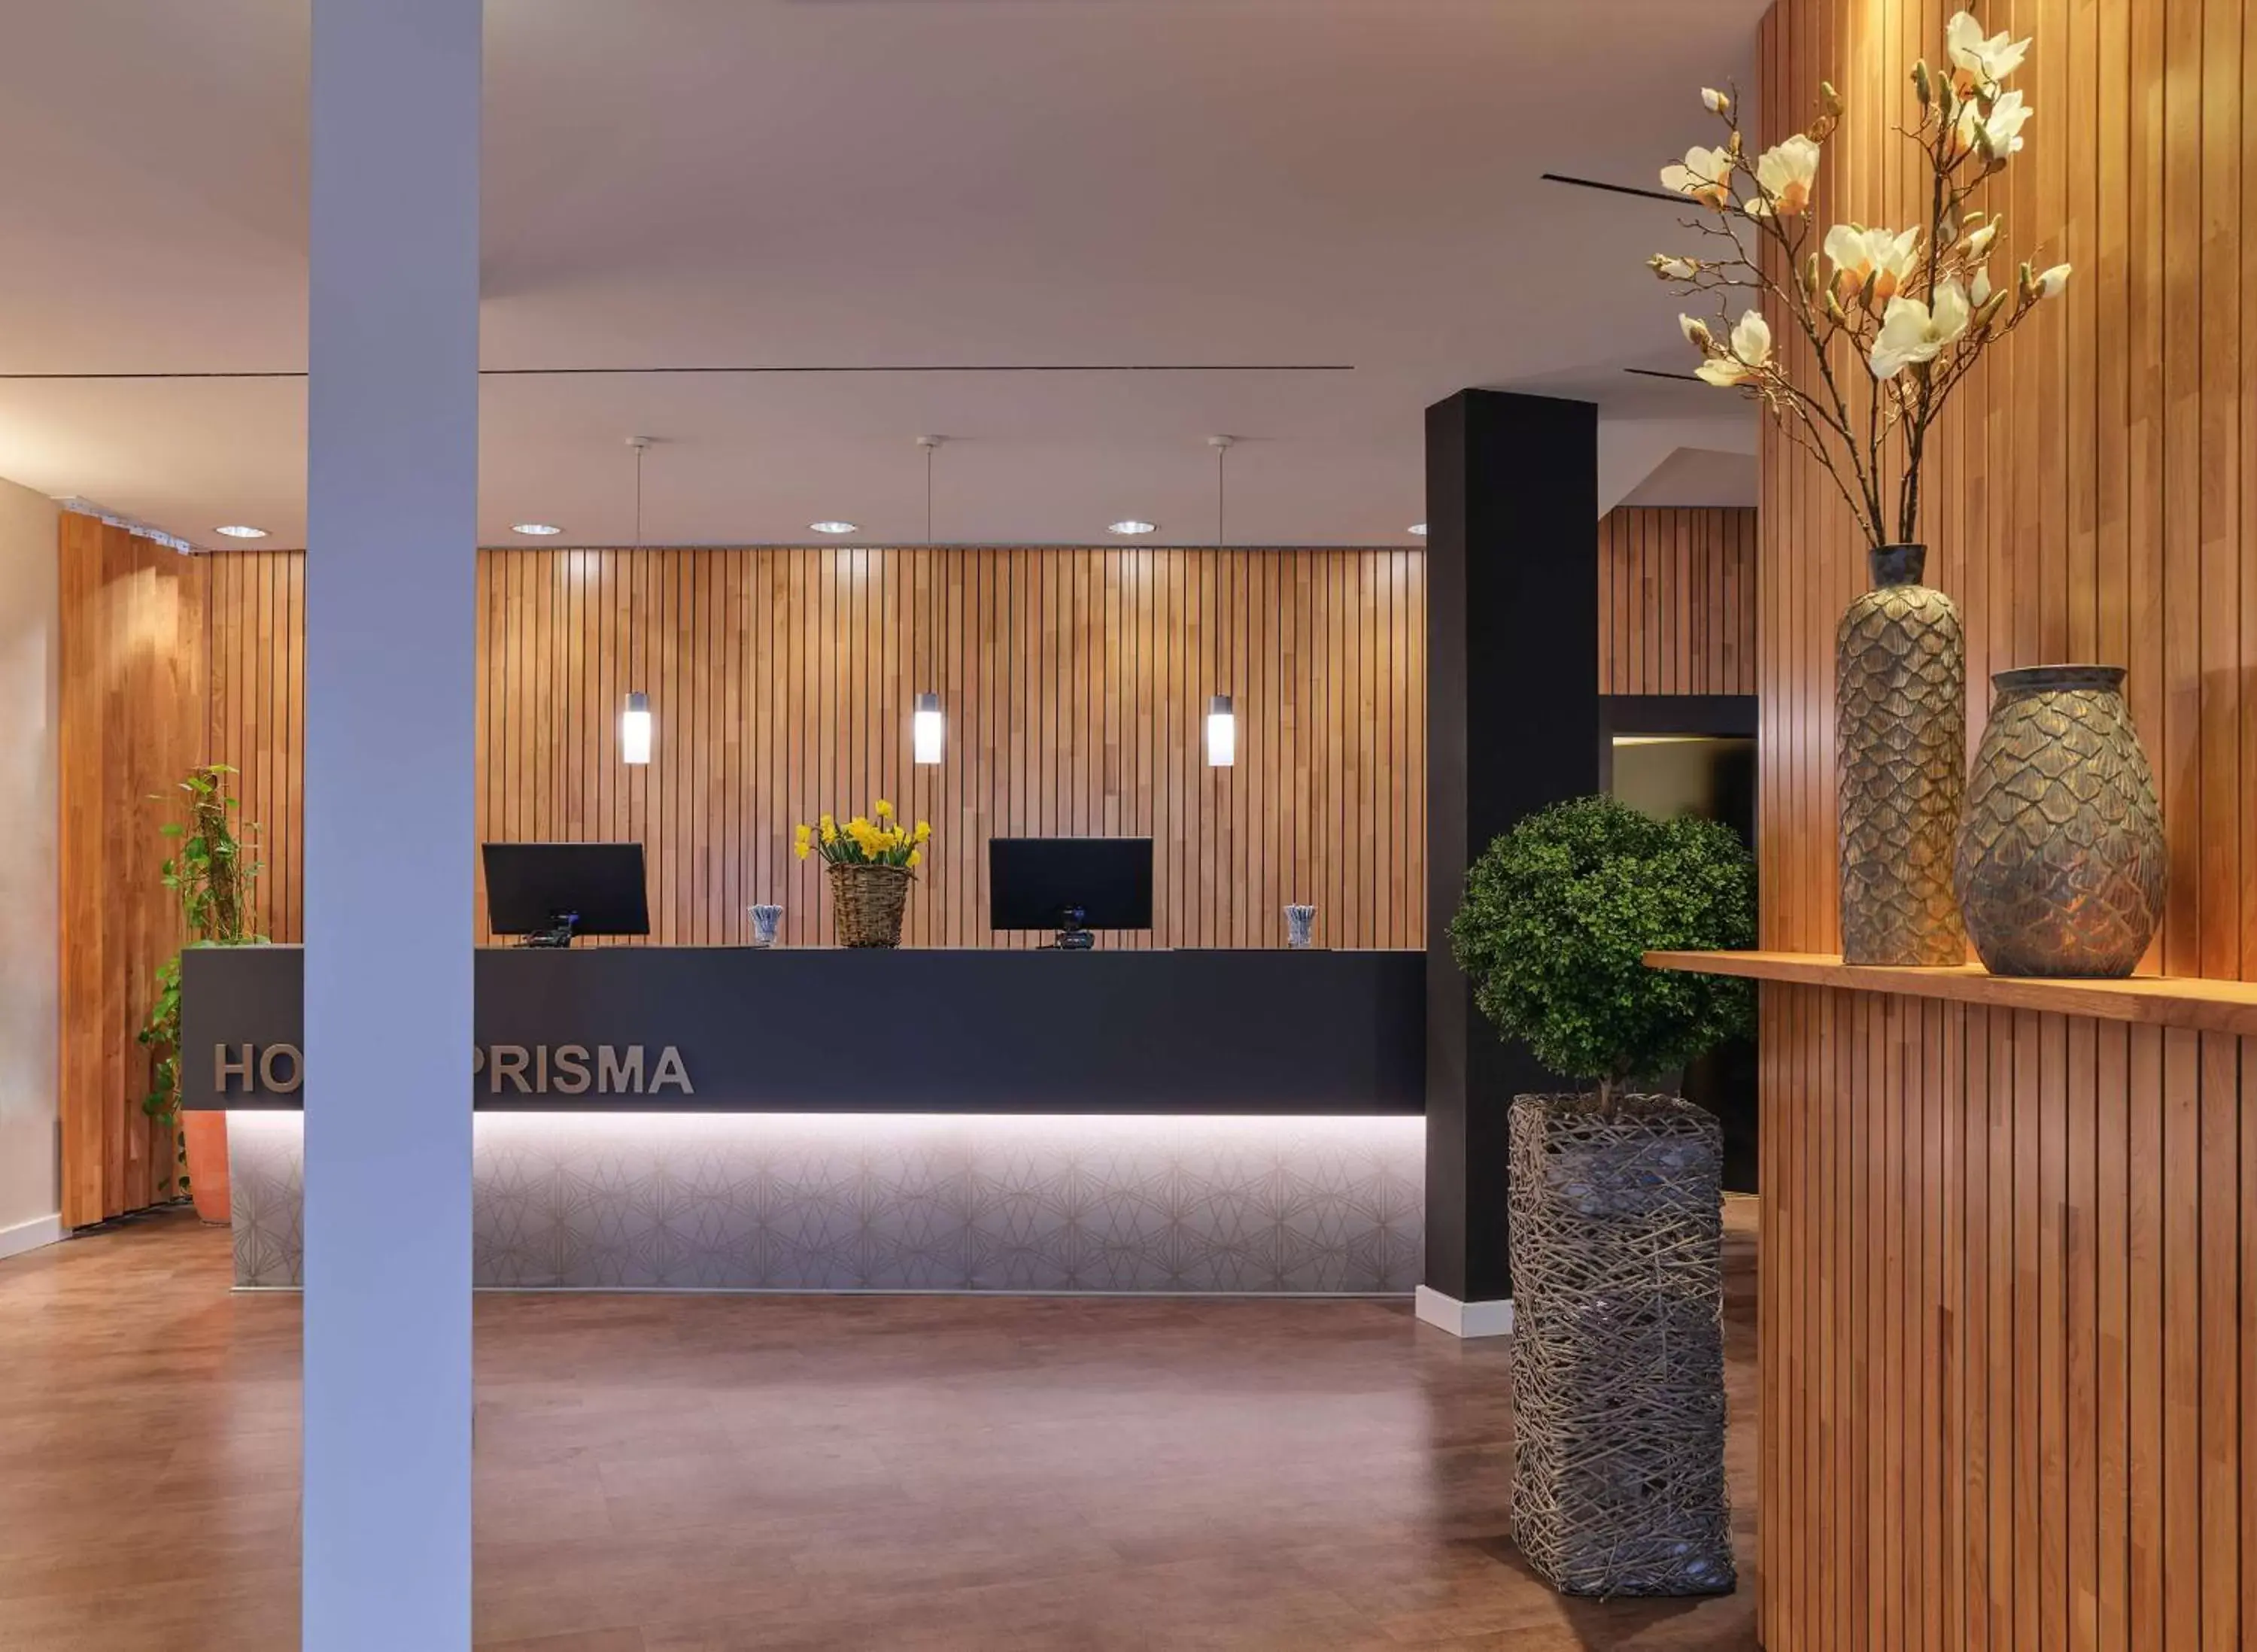 Lobby or reception, Lobby/Reception in Best Western Hotel Prisma